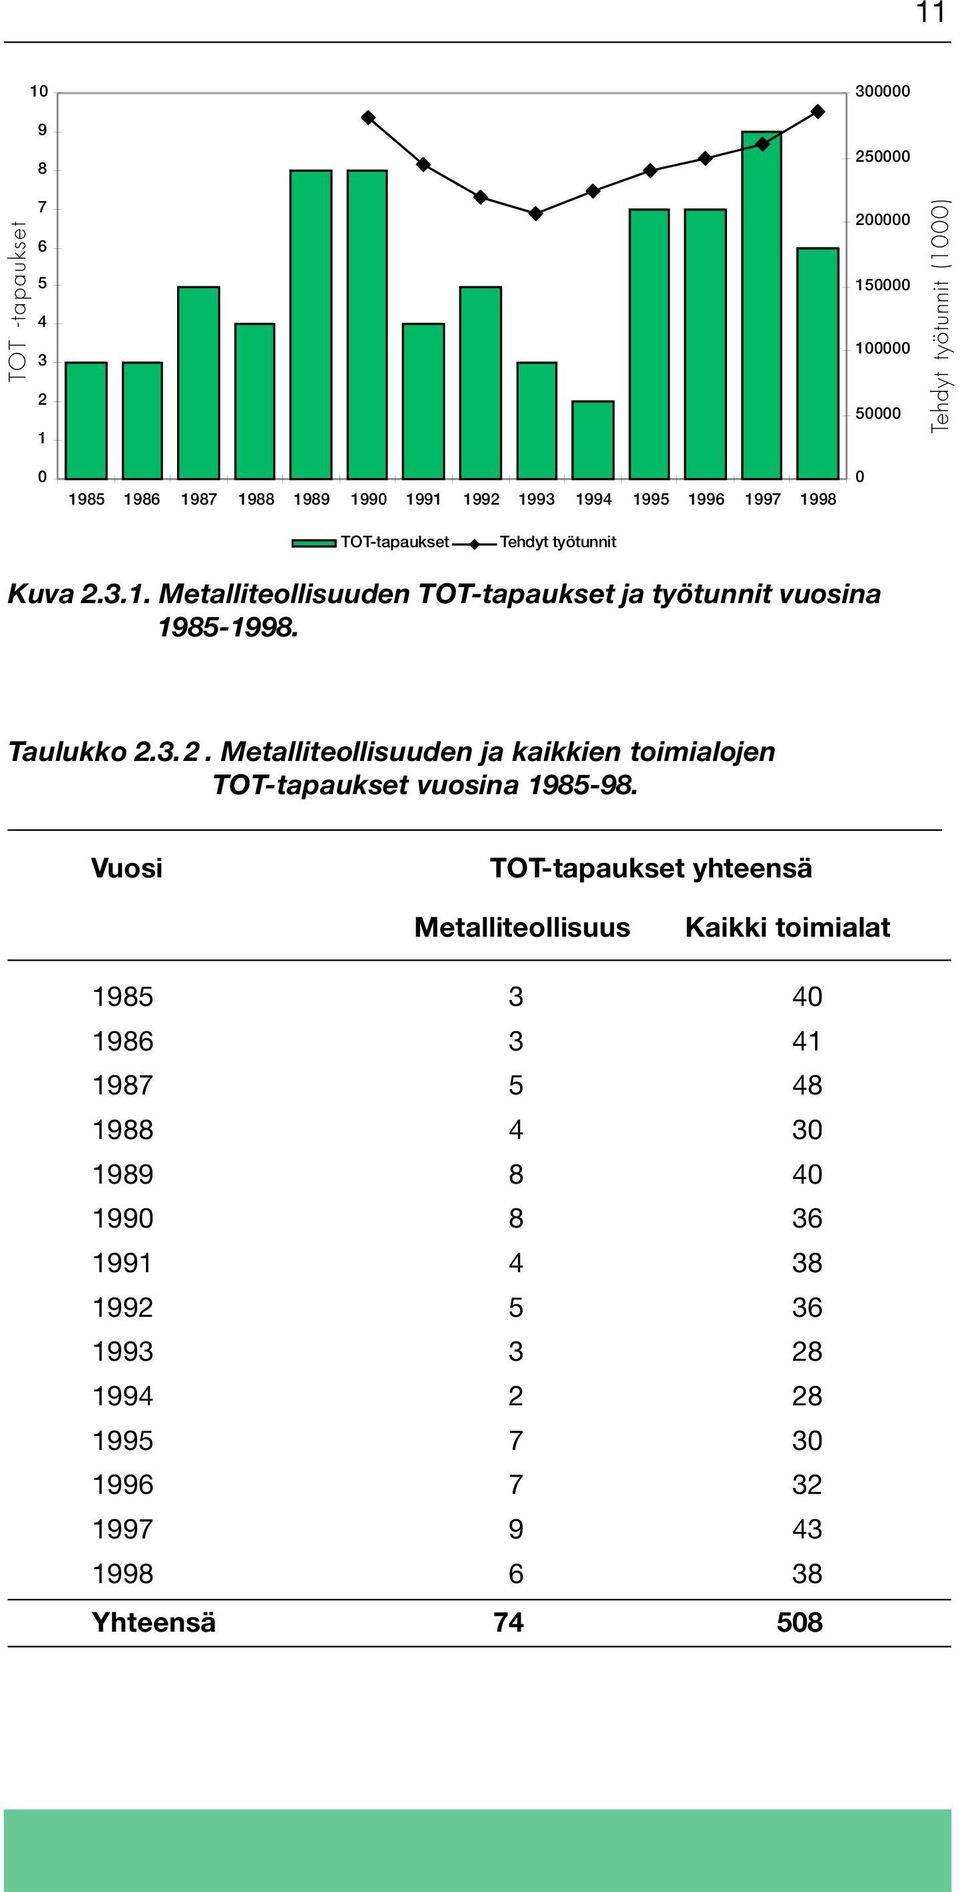 Taulukko 2.3.2. Metalliteollisuuden ja kaikkien toimialojen TOT-tapaukset vuosina 1985-98.